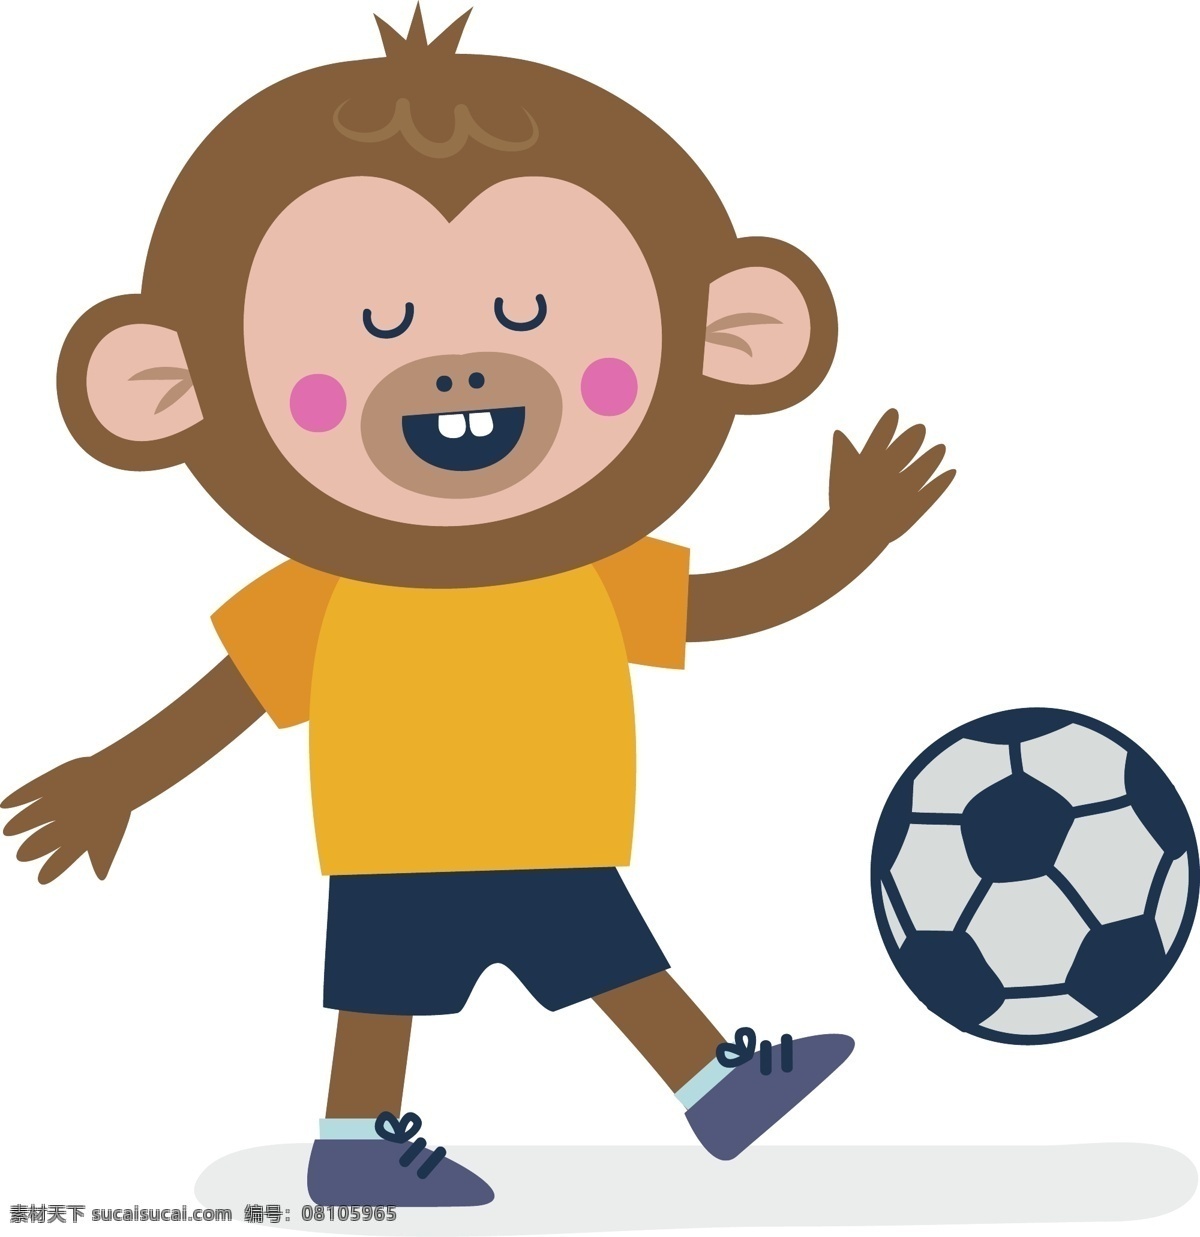 可爱 卡通 动物 小 猴子 踢 足球 矢量 卡通小猴子 小猴子矢量 可爱卡通动物 踢足球矢量 可爱小动物 生物世界 野生动物